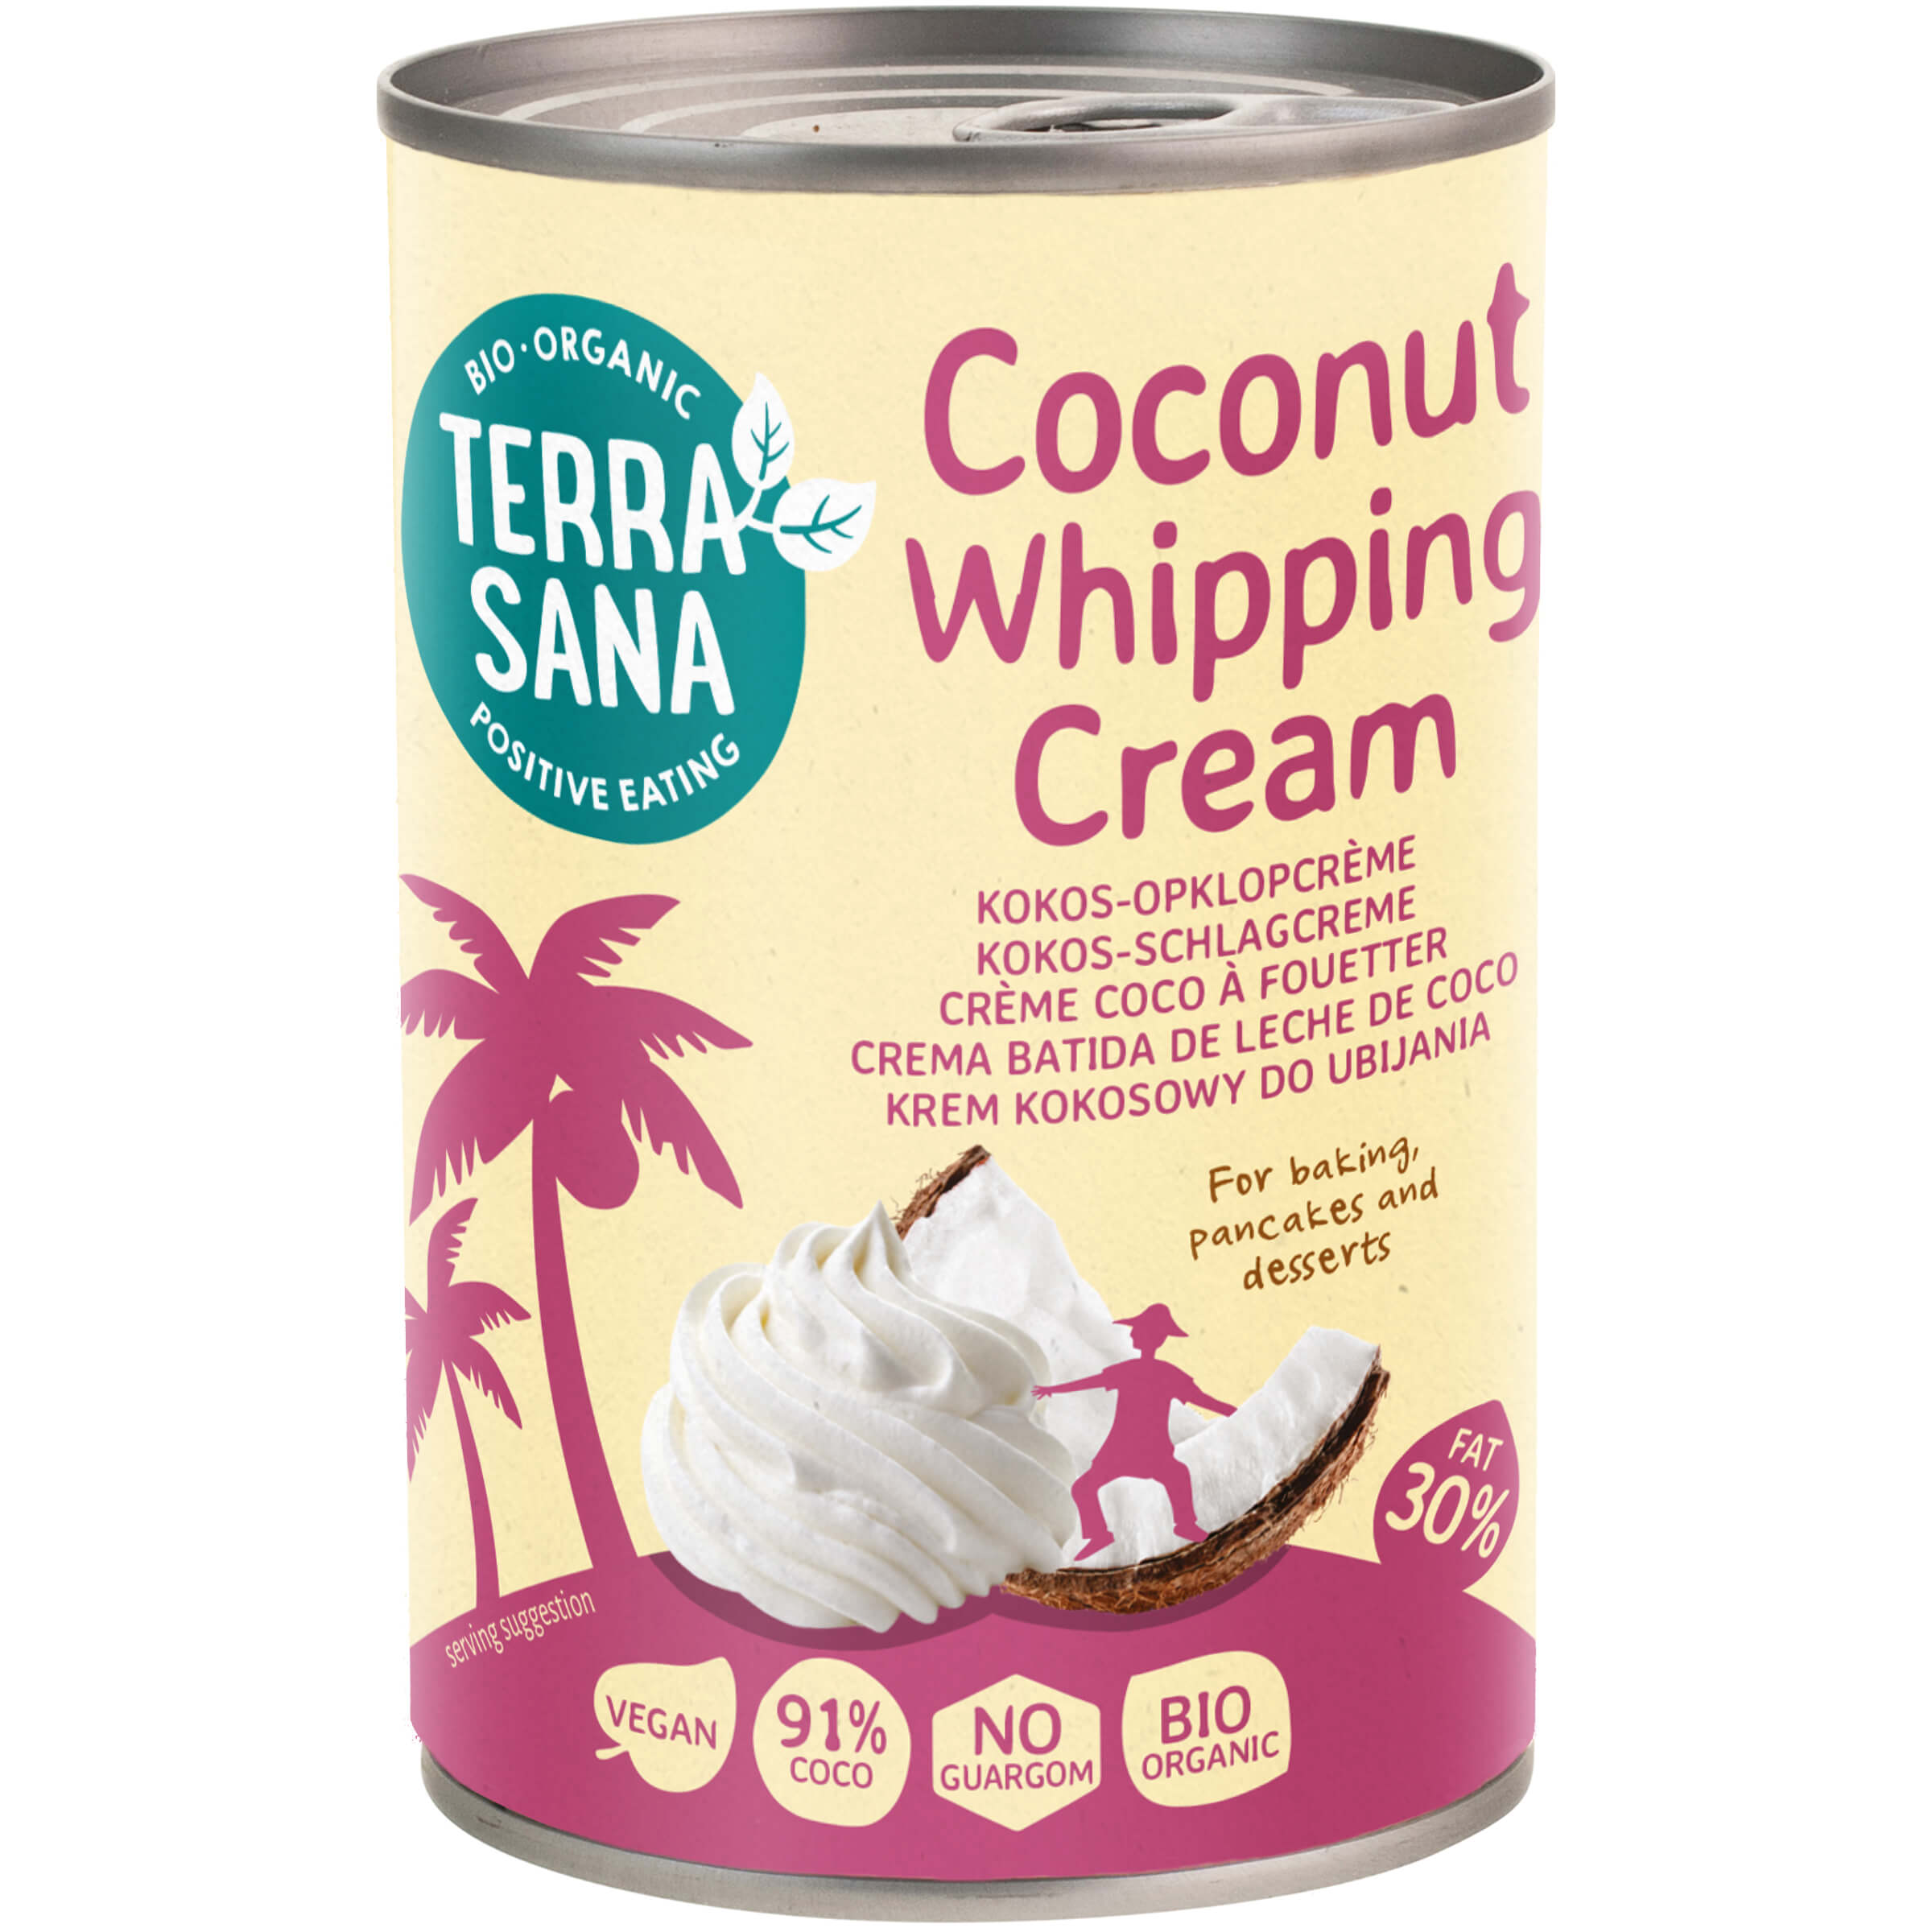 Krem kokosowy do ubijania BIO 400 ml - TerraSana